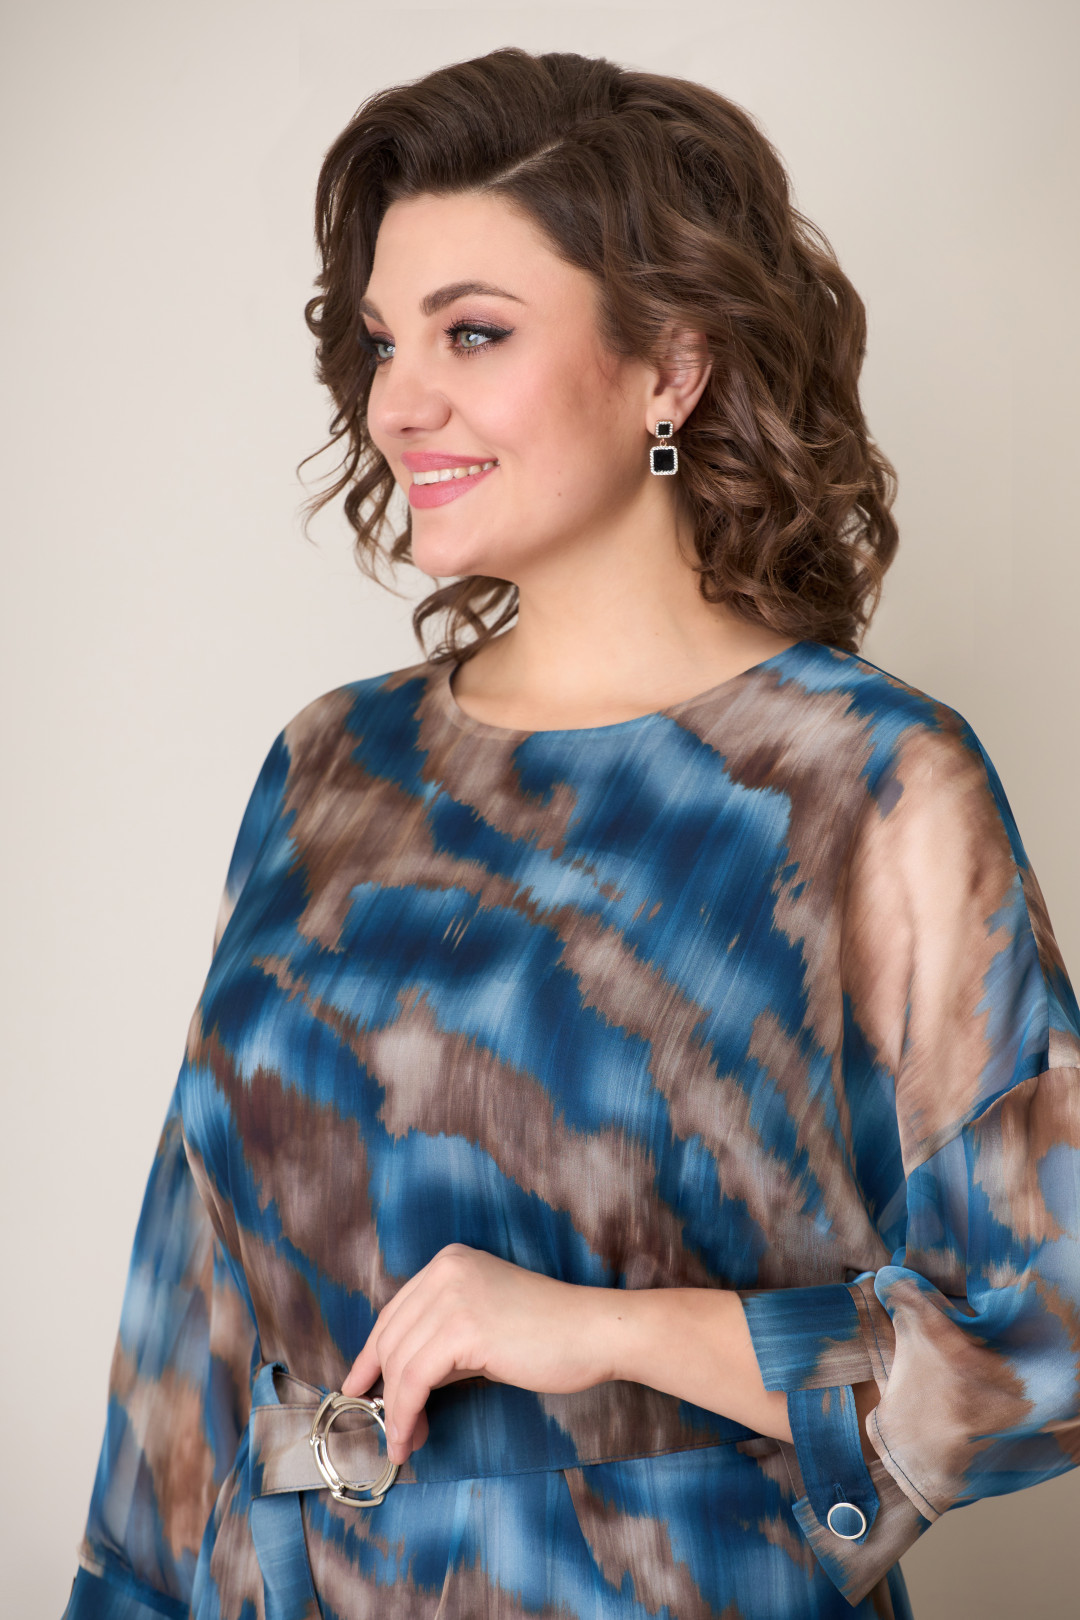 Платье VOLNA 1275 бежево-голубой